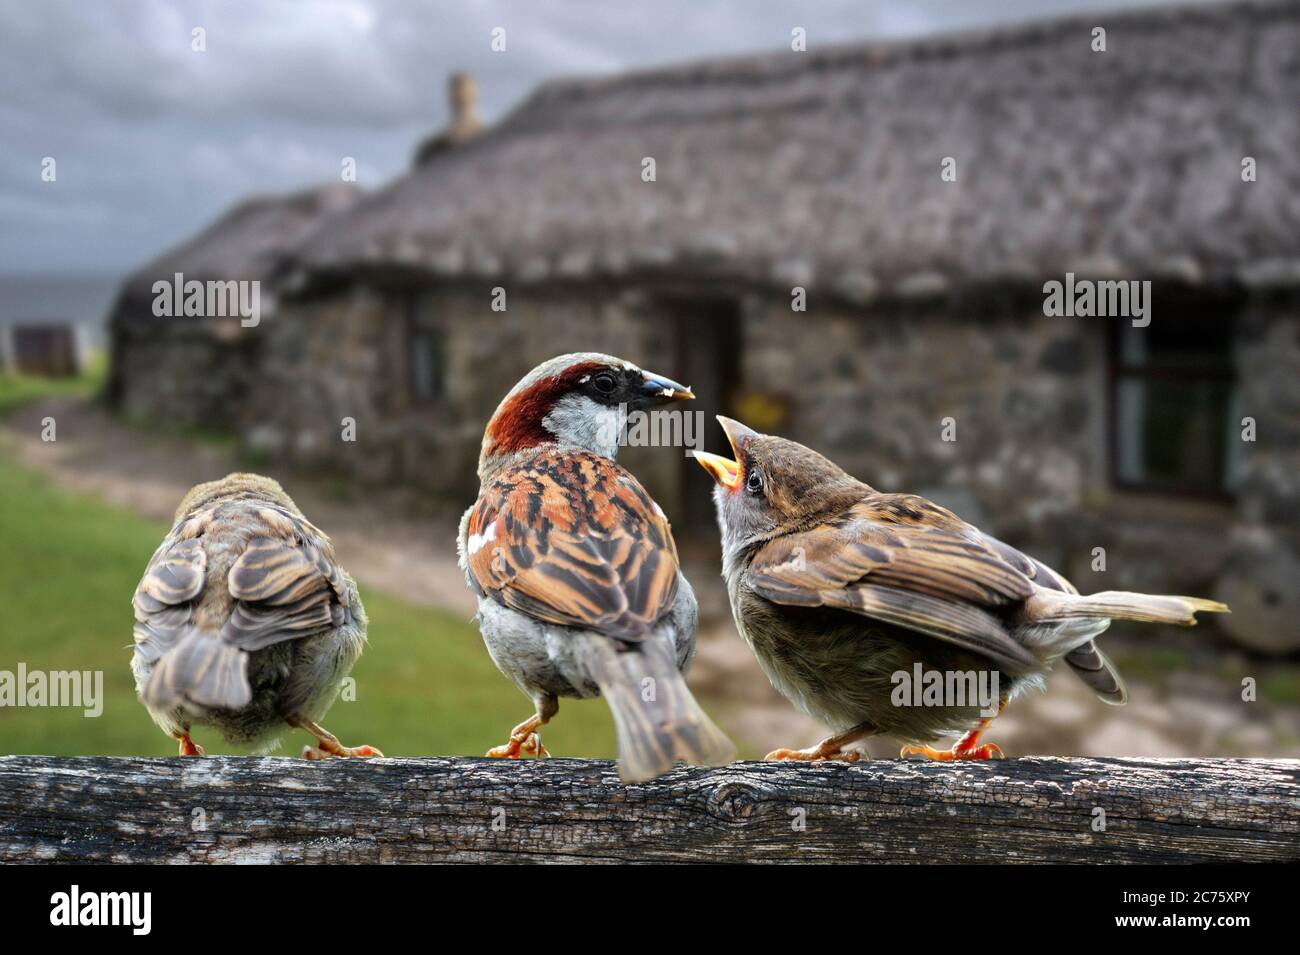 Bruant commun / Bruant de maison (Passer domesticus) mâle nourrissant des juvéniles sur la clôture de jardin, juillet. Composite numérique Banque D'Images